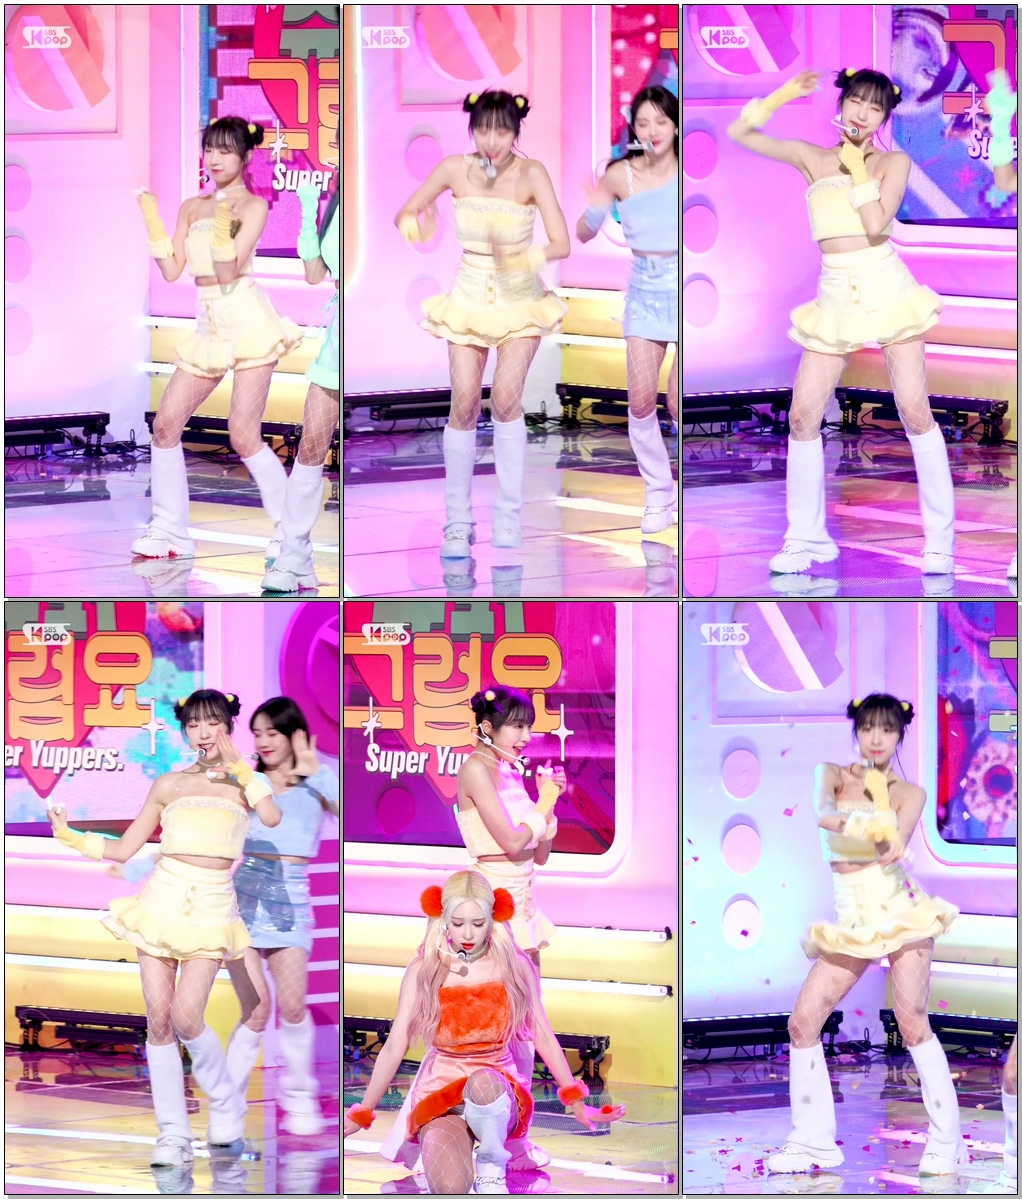 [안방1열 직캠] 우주소녀 쪼꼬미 수빈 '슈퍼그럼요' (WJSN CHOCOME SOOBIN 'Super Yuppers!' FanCam)│@SBS Inkigayo_20220109